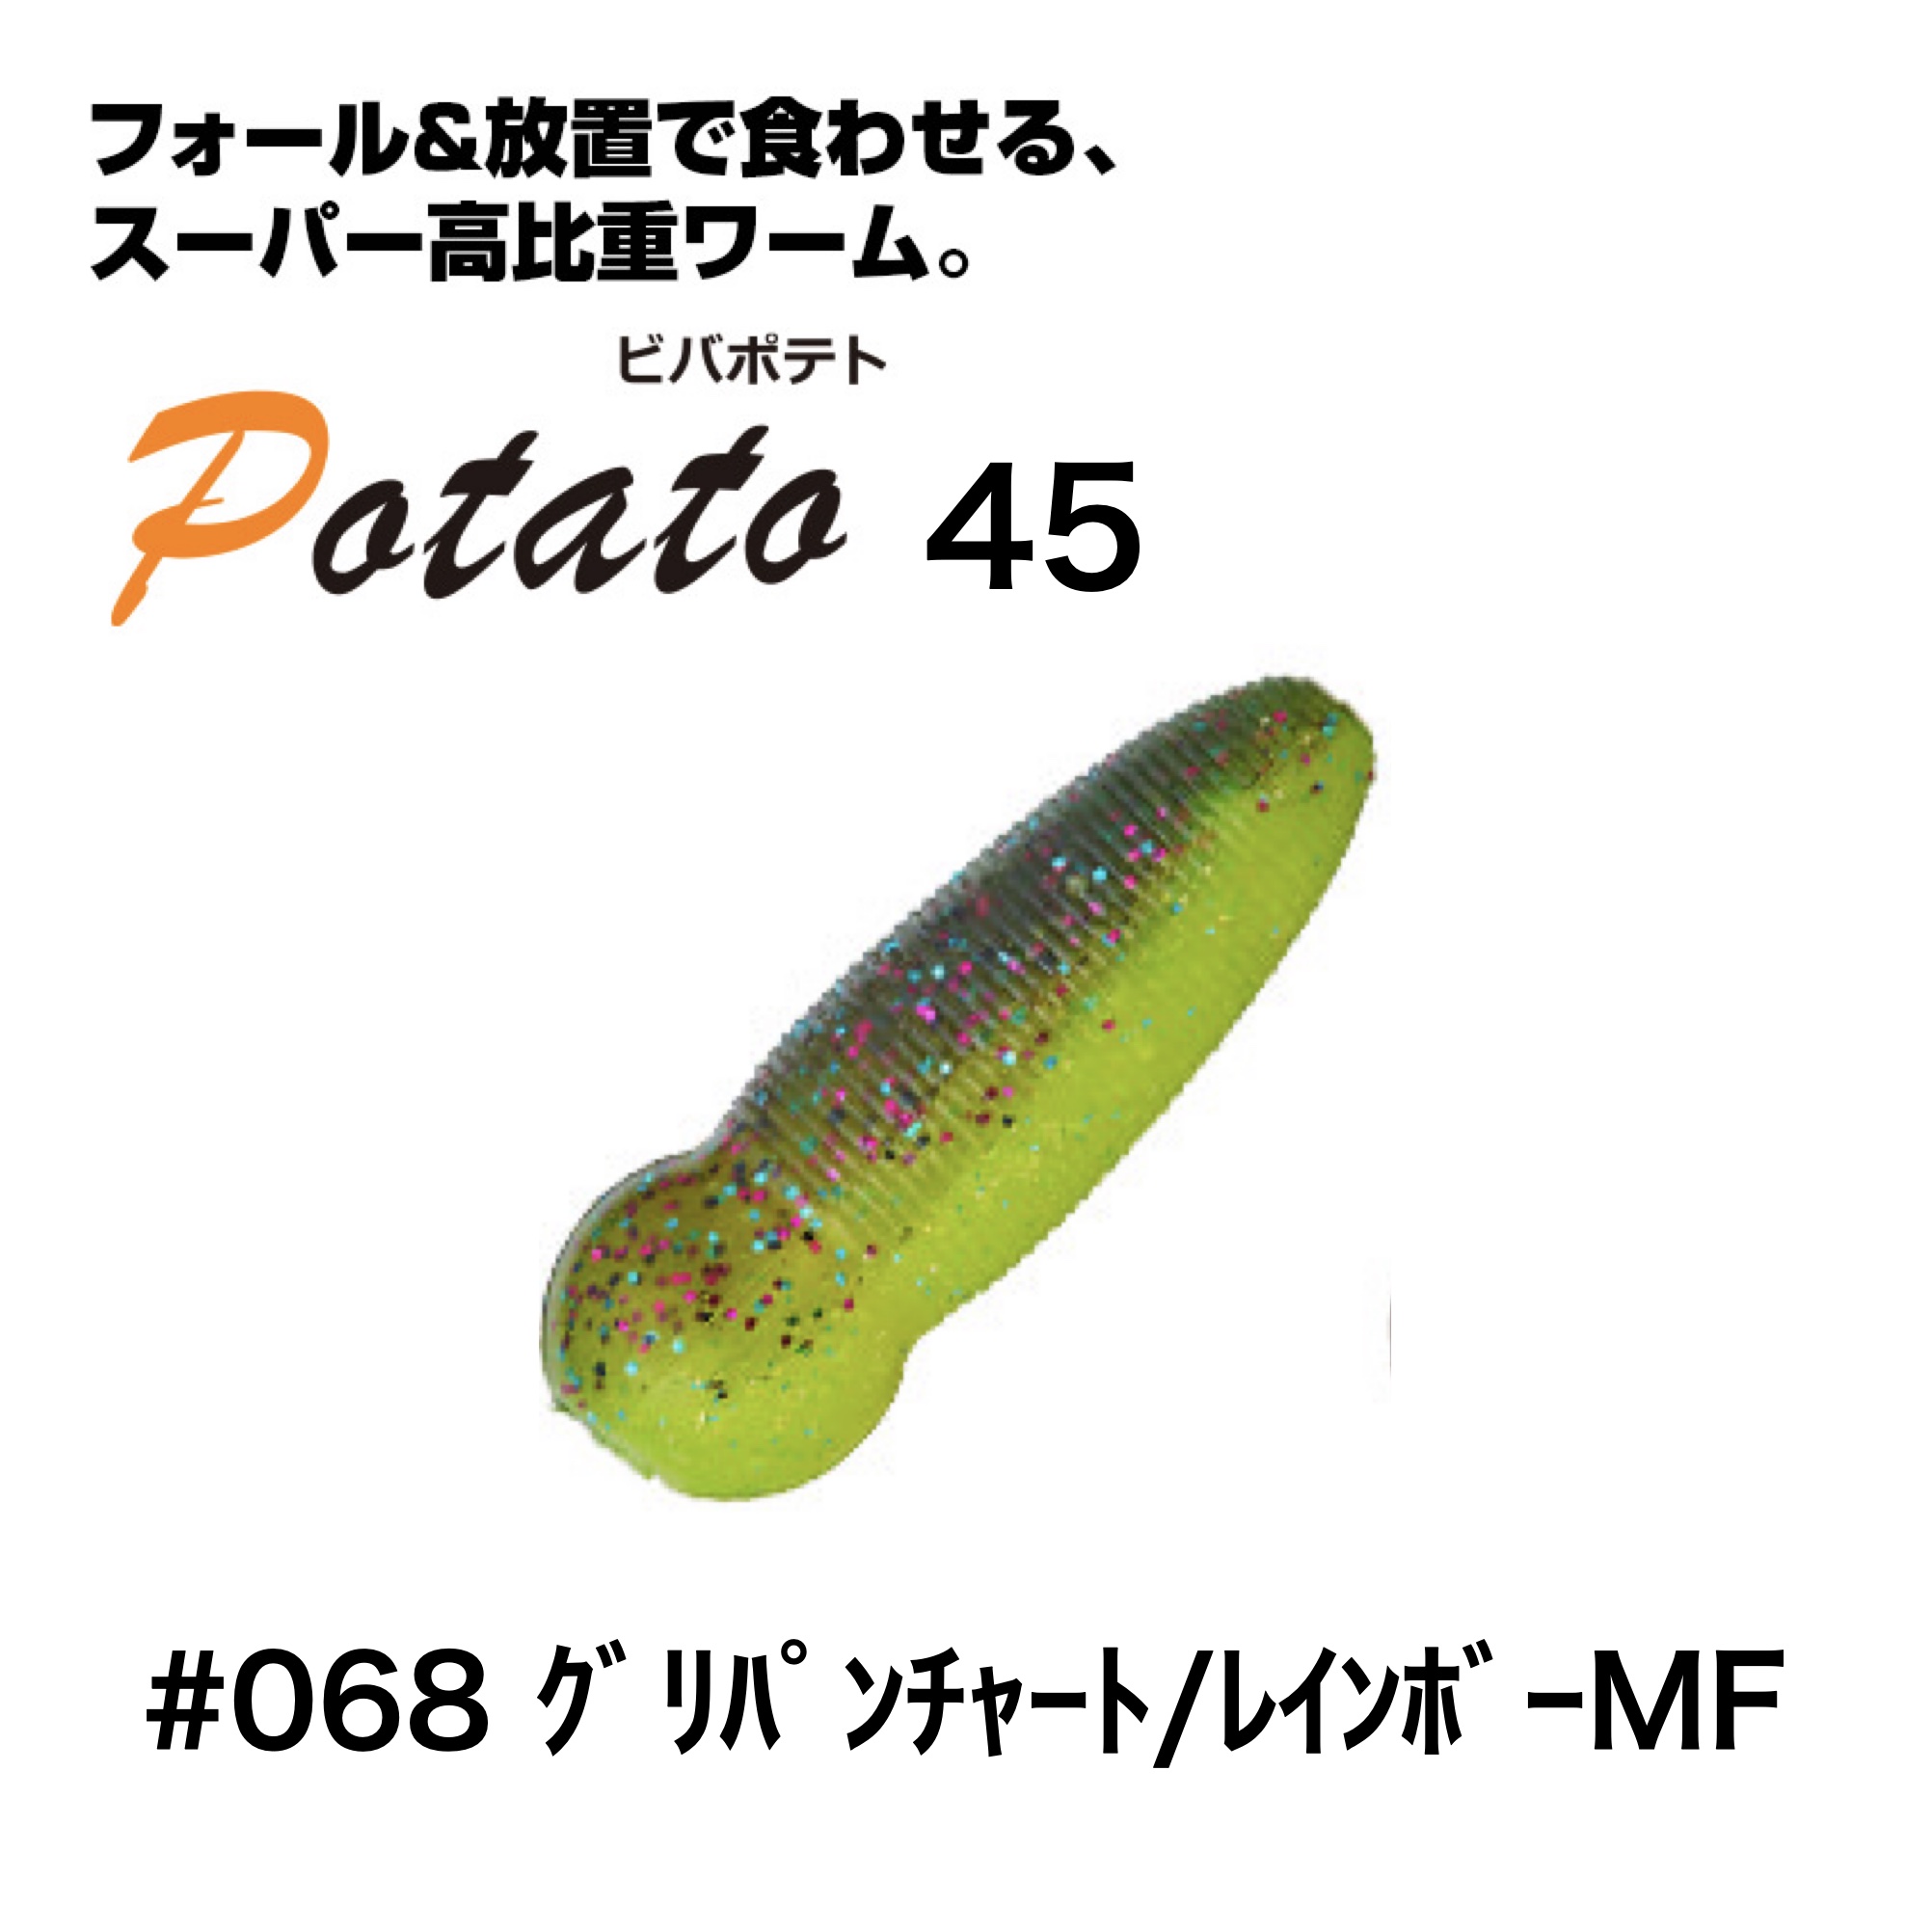 ビバ ポテト 45 グリパンチャート/レインボーMF